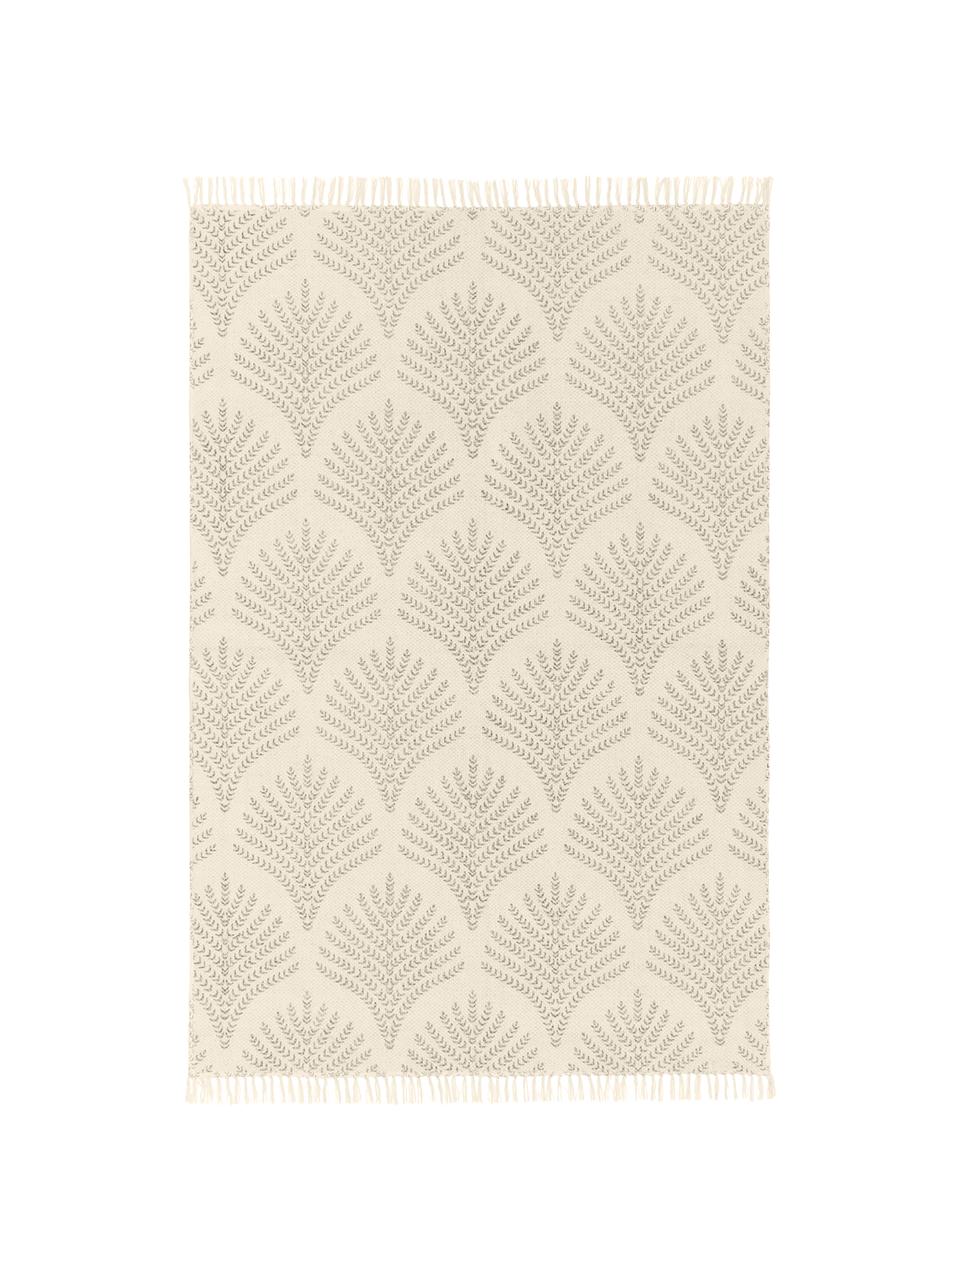 Tappeto in cotone beige/taupe tessuto piatto con frange Klara, Beige, Larg. 70 x Lung. 140 cm (taglia XS)